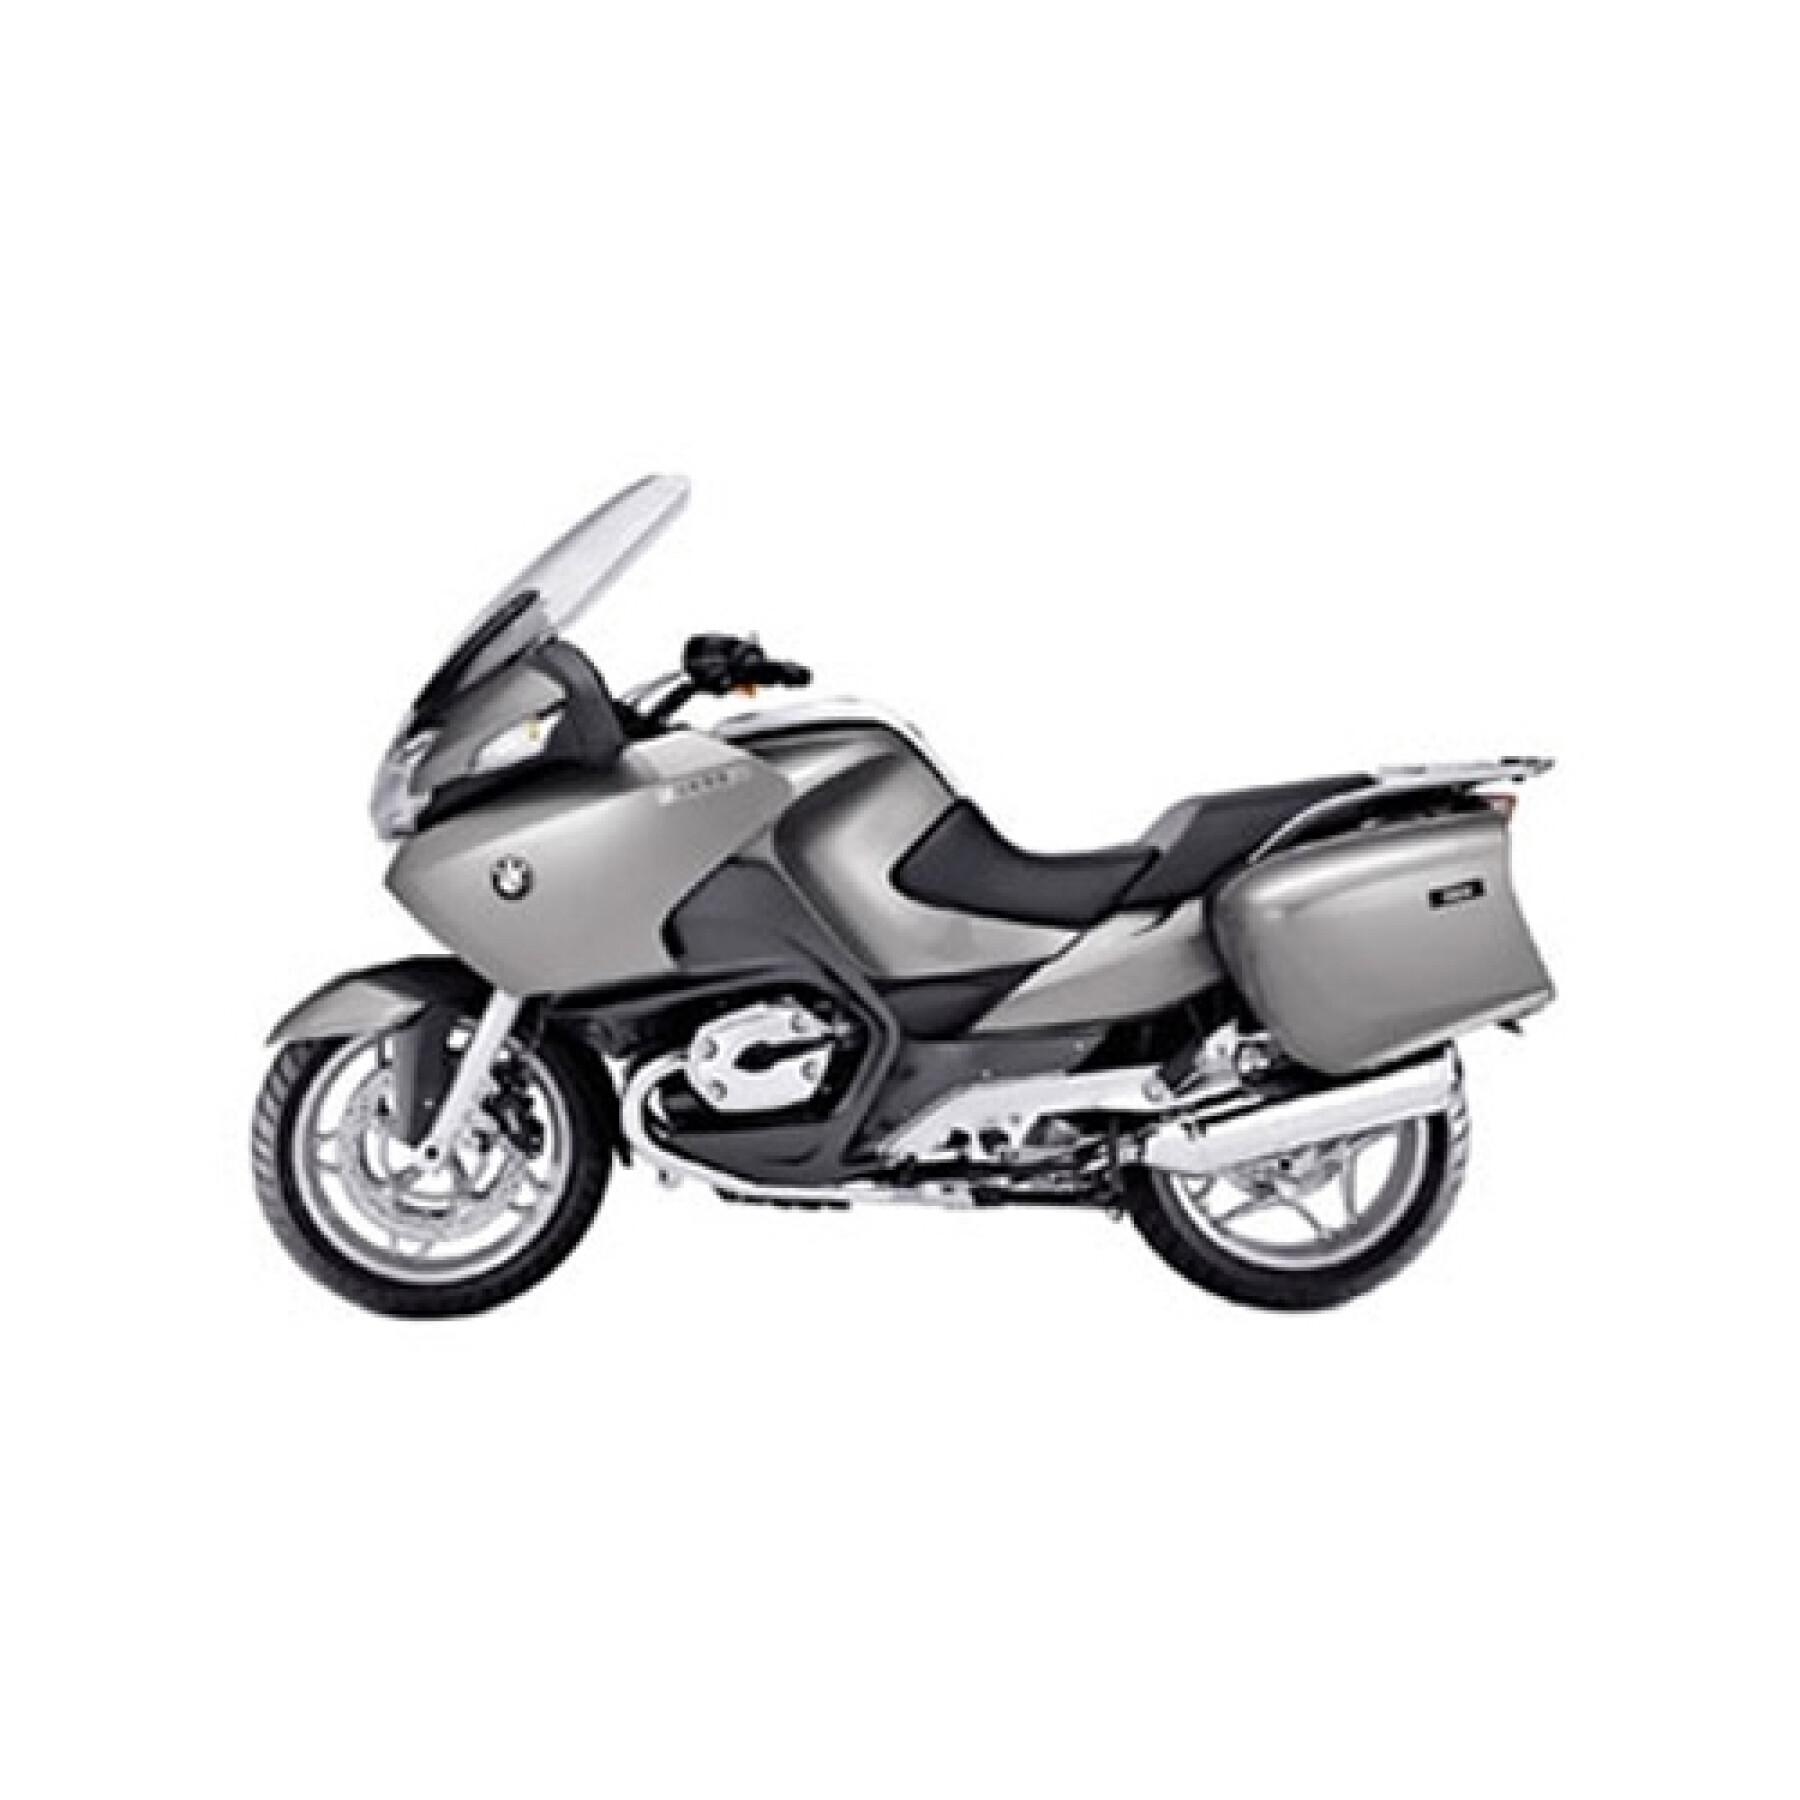 Suporte de alumínio para a motocicleta Givi Monokey Bmw R 1200 RT (05 à 13)/K 1600 GT (11 à 20)